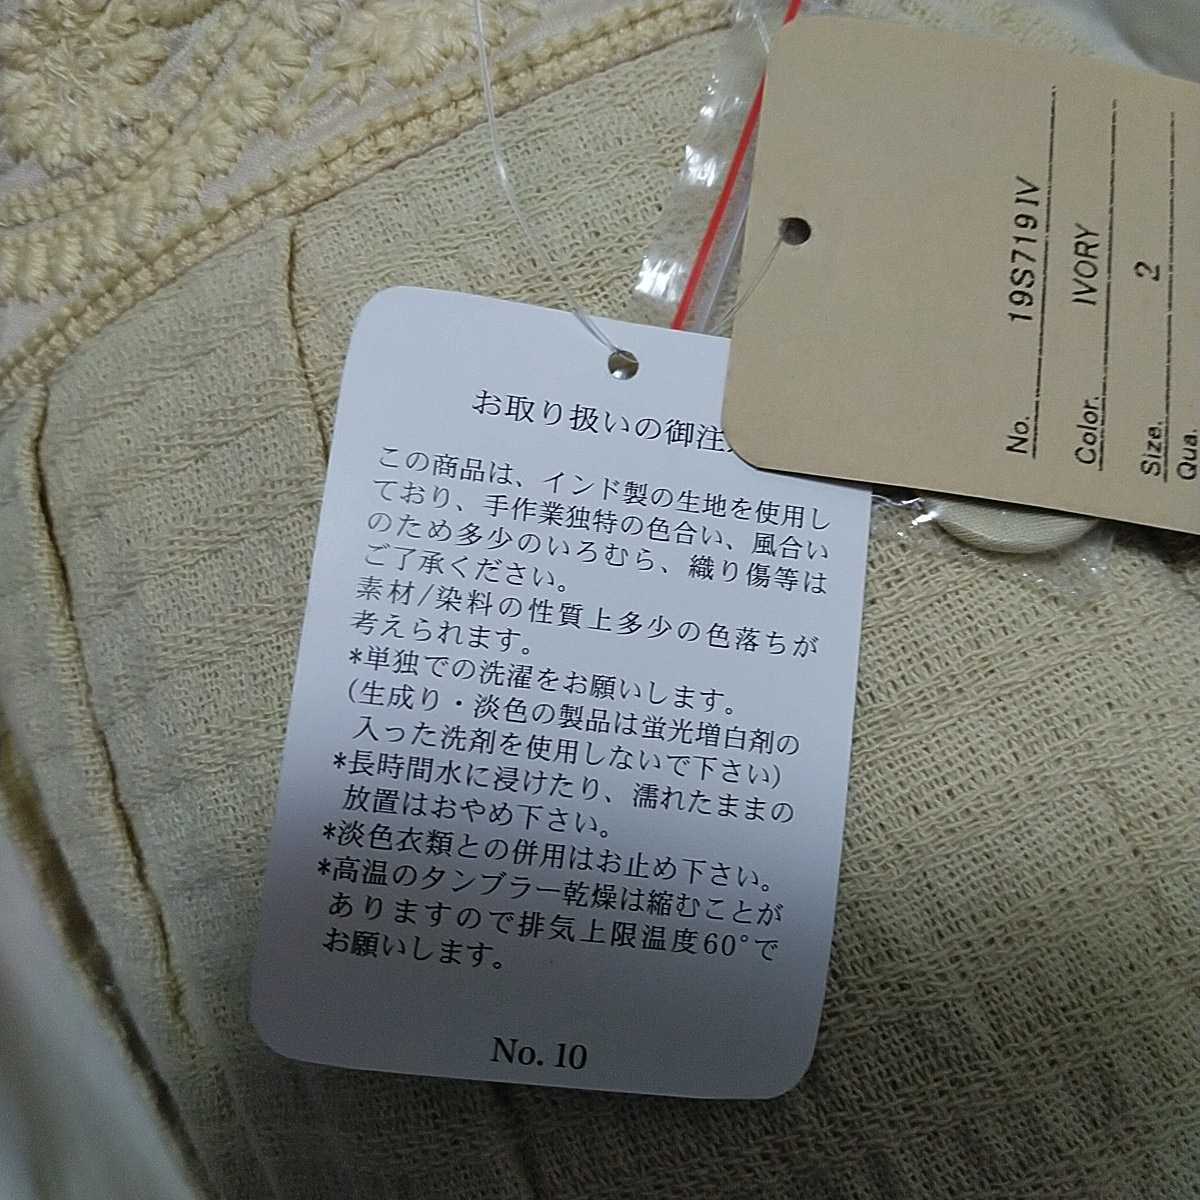 東京かんかん 綿100％ ジャカード素材 ロングセミタイトスカート ウエストベルト 豪華刺繍 裏地付き フリーサイズ 税込10450円が1200円_アテンションタグ等は付いていません。